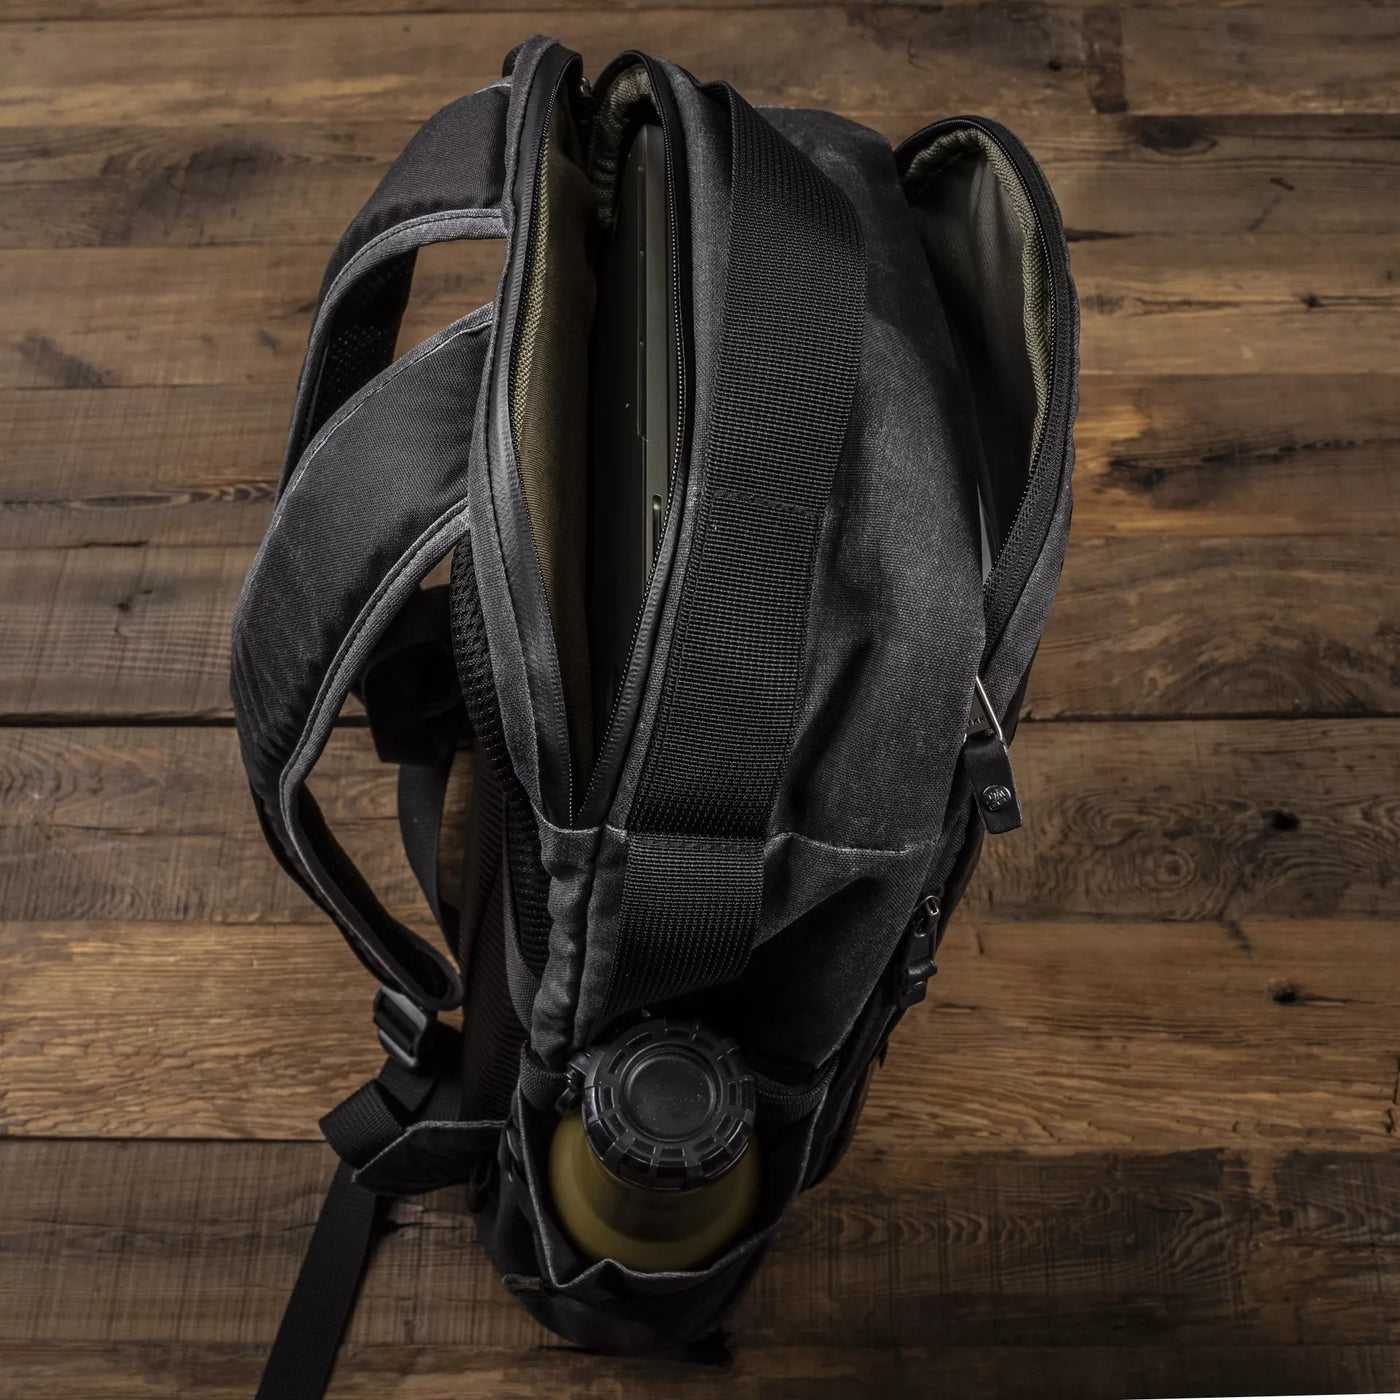 Wotancraft - Urban Explorer Backpack | 14L